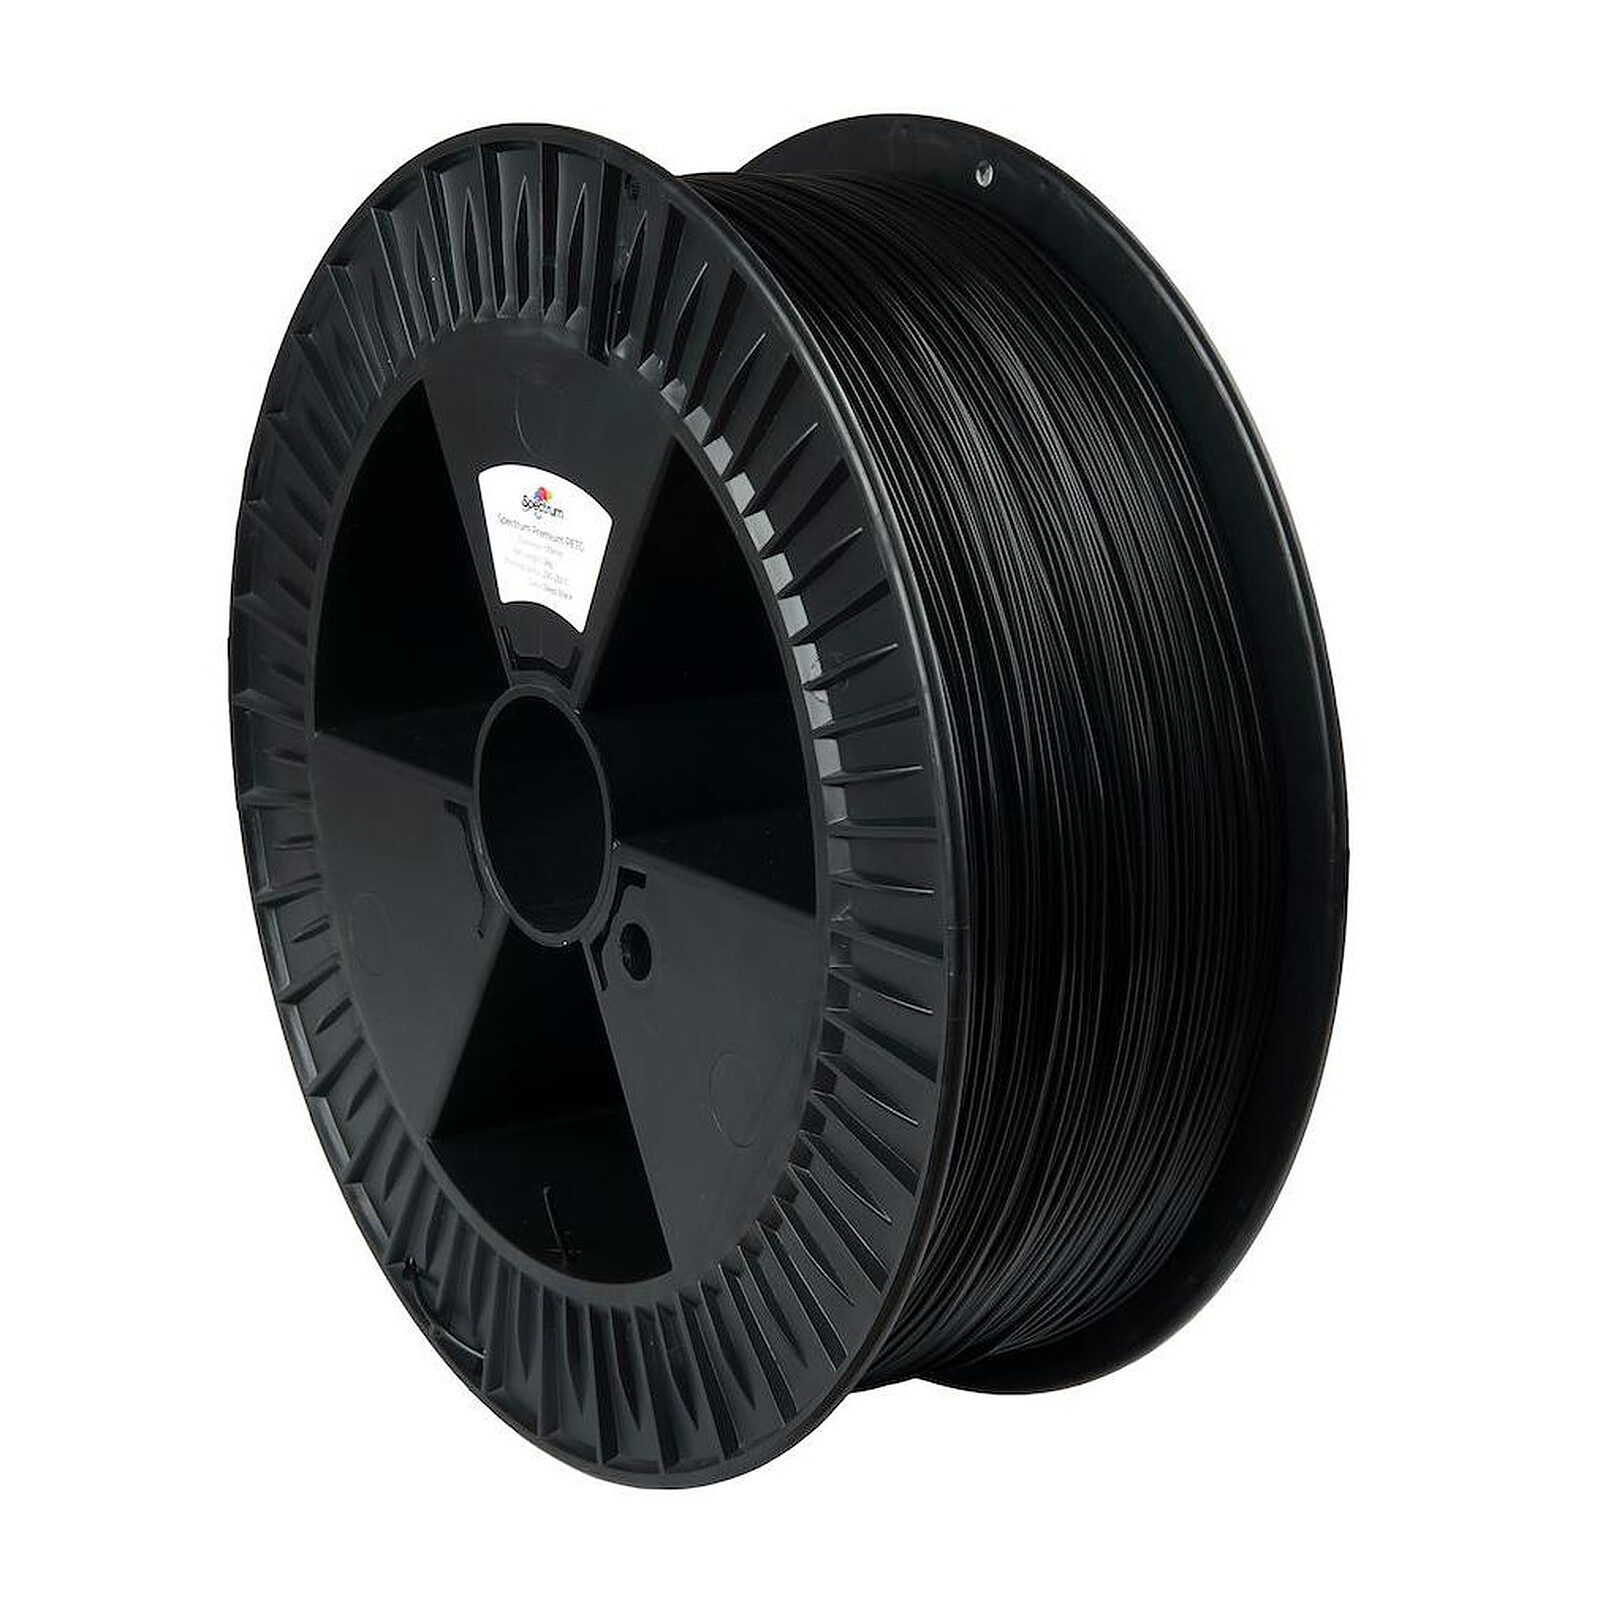 Spectrum Premium PLA noir (deep black) 1,75 mm 2kg - Filament 3D - LDLC